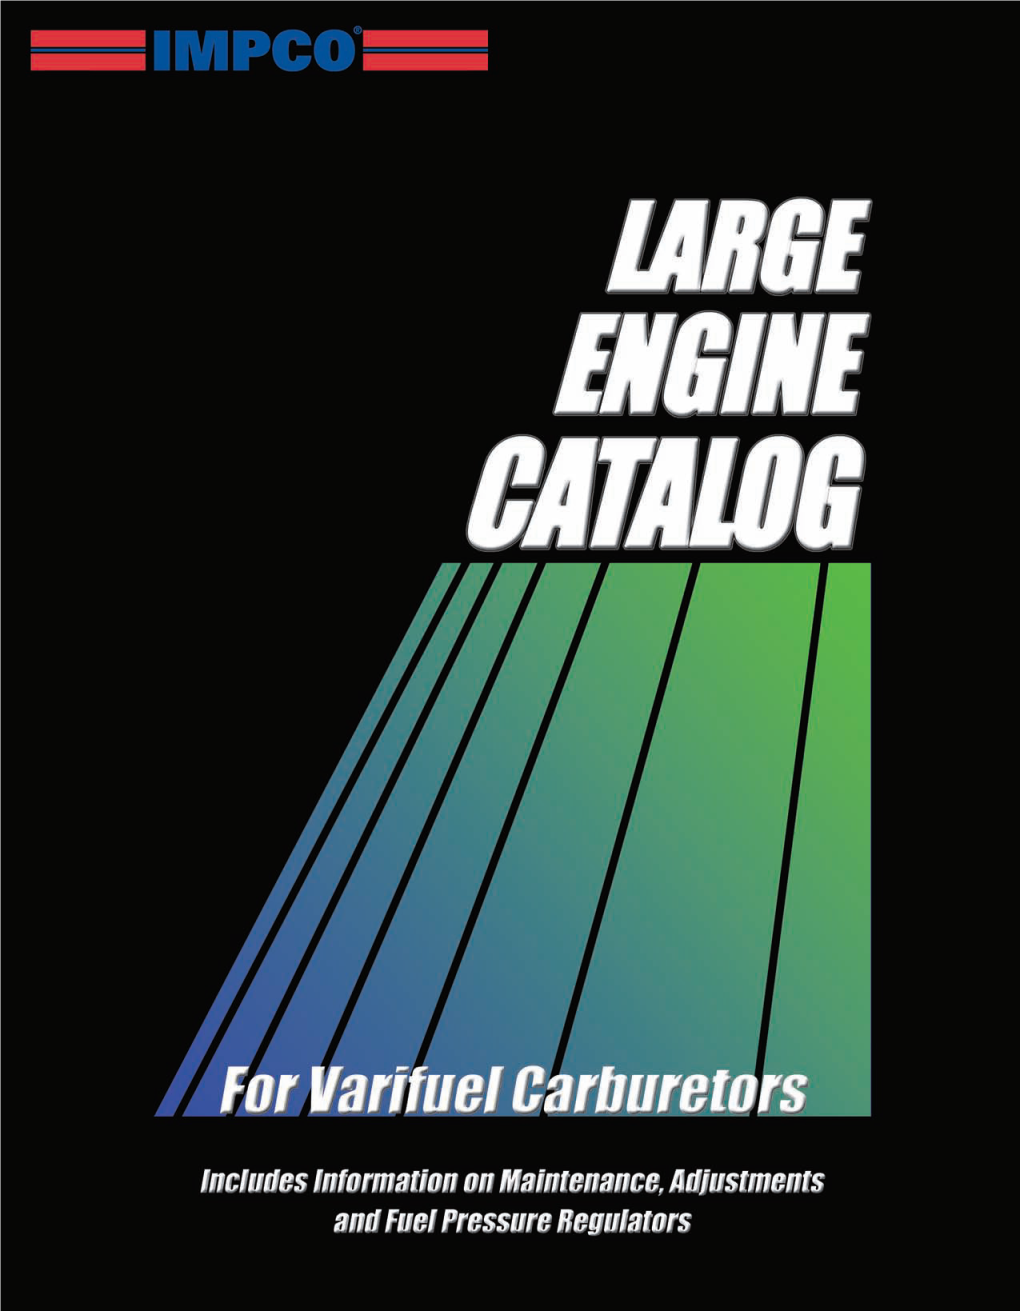 IMPCO Large Engine Catalog